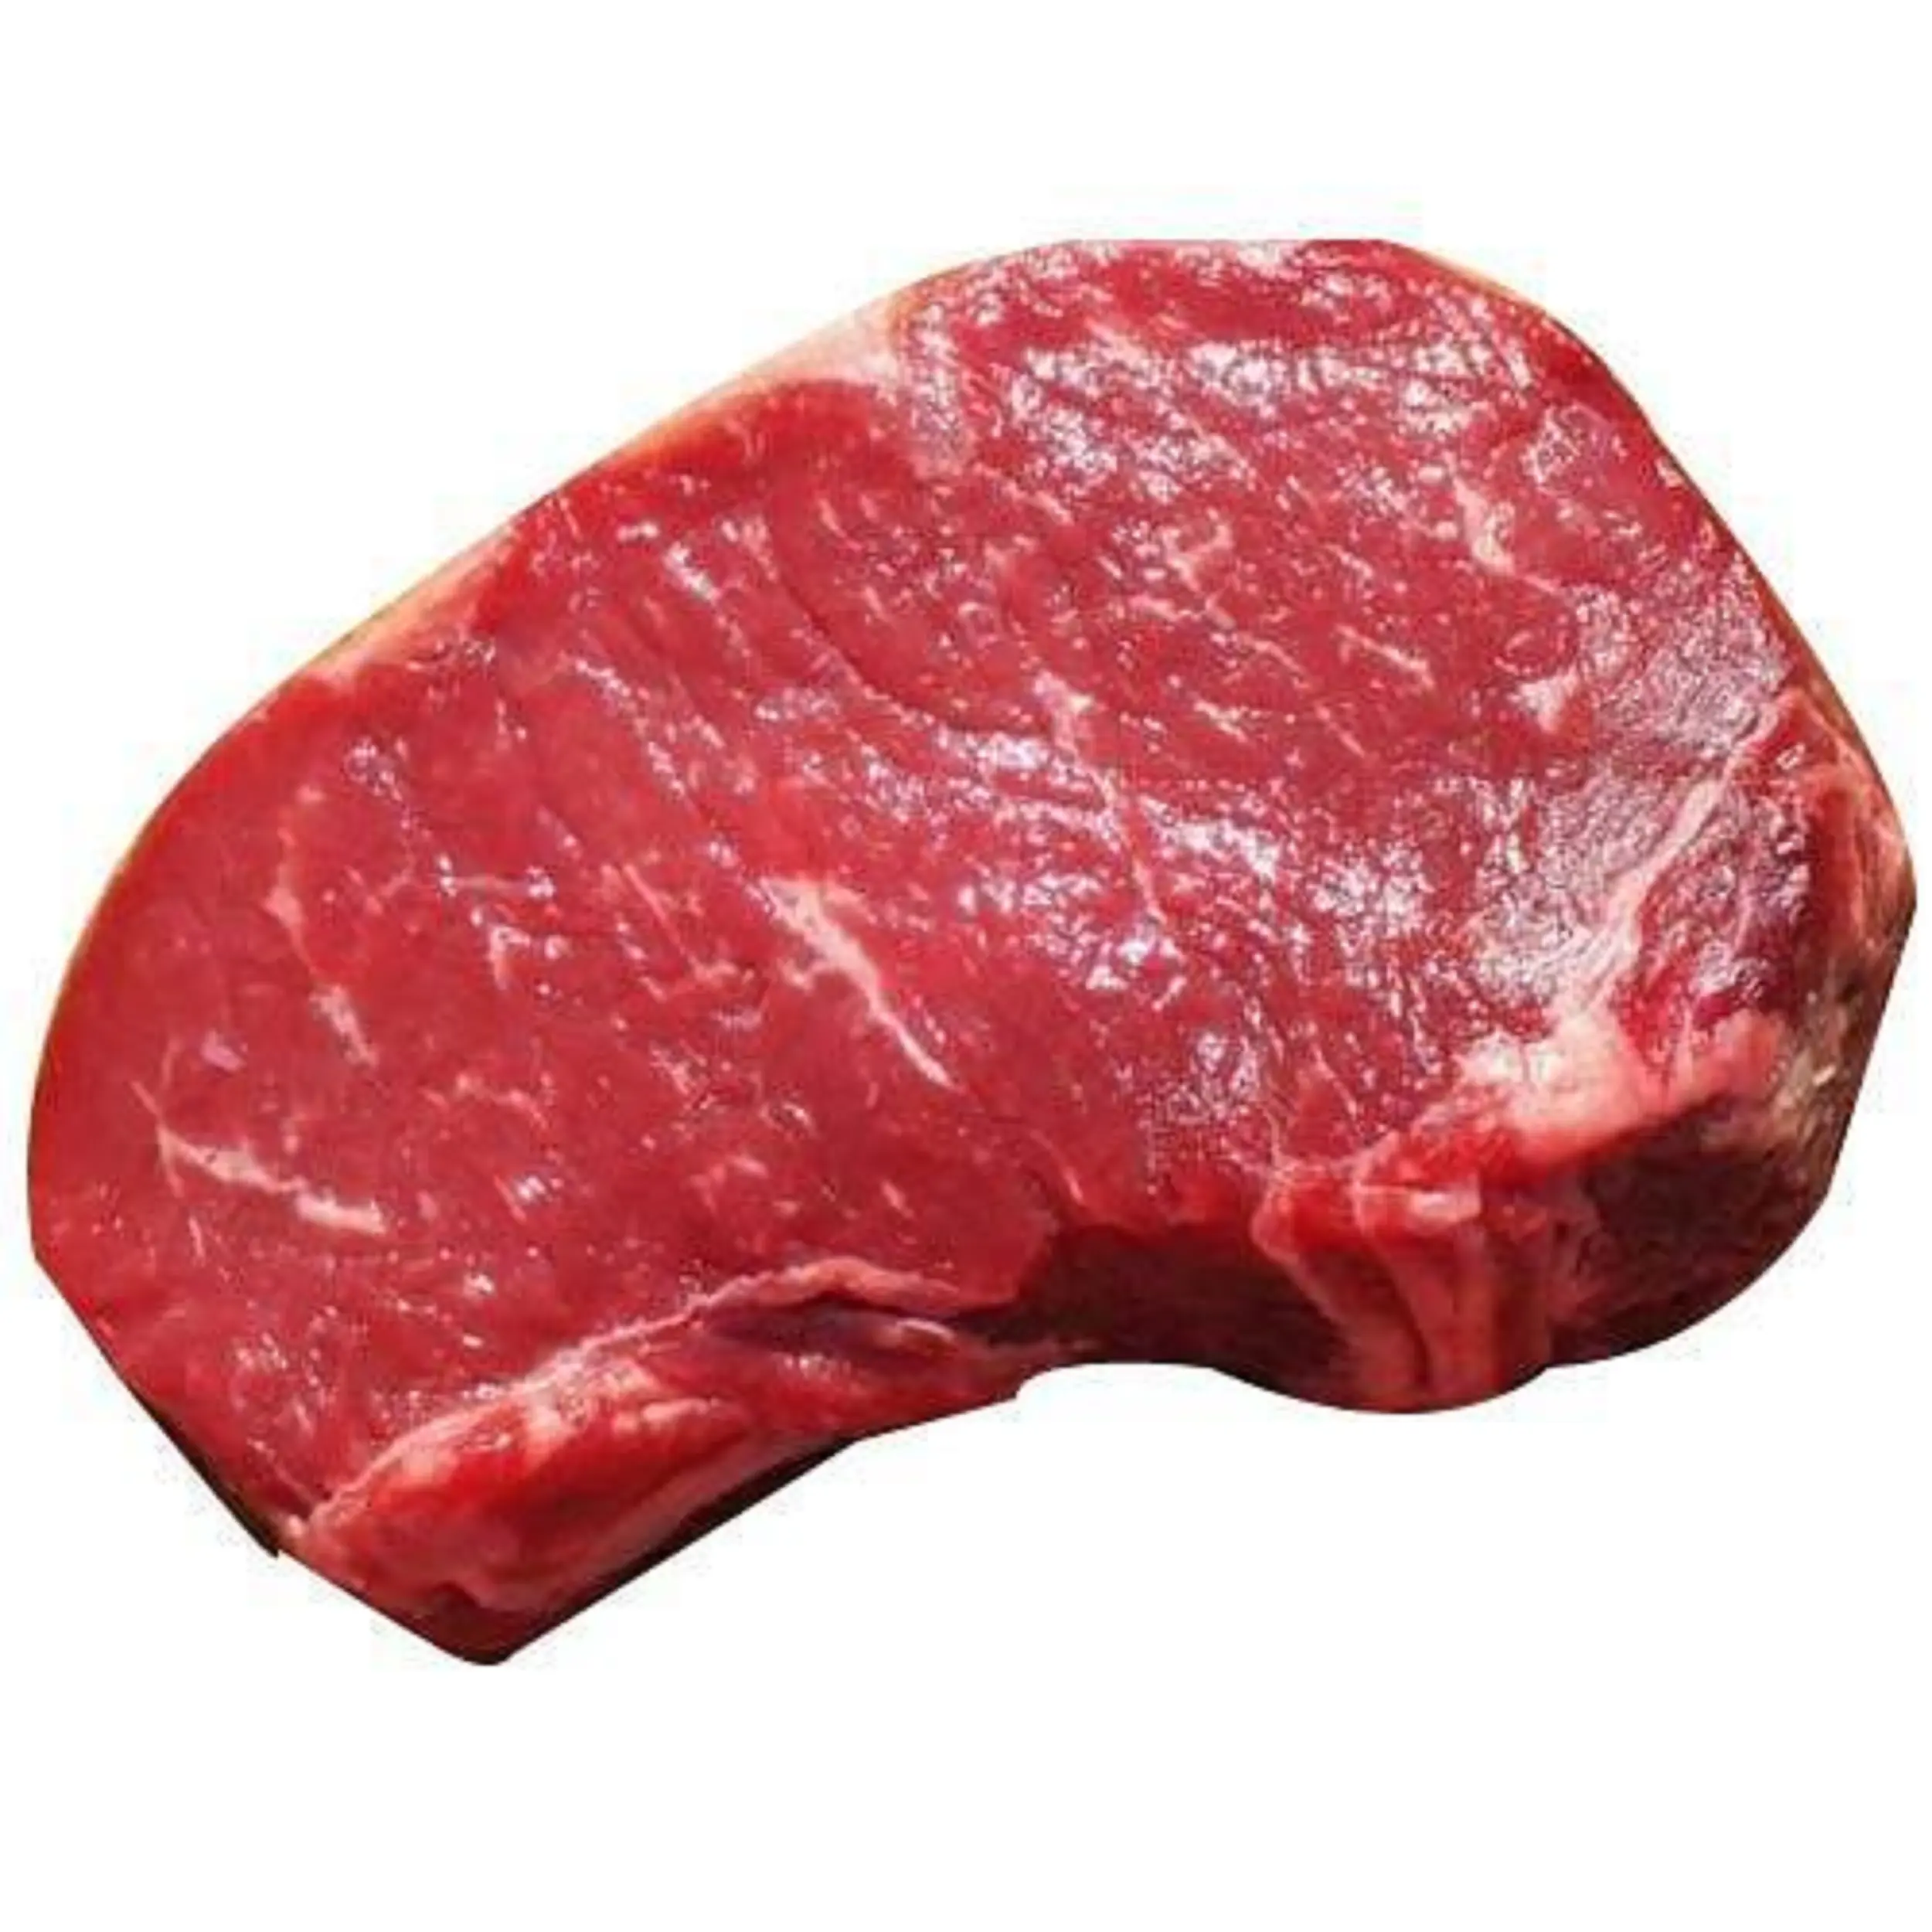 בשר בופלו כיתה חלאל בשר בופלו קפוא טרי במחיר זול